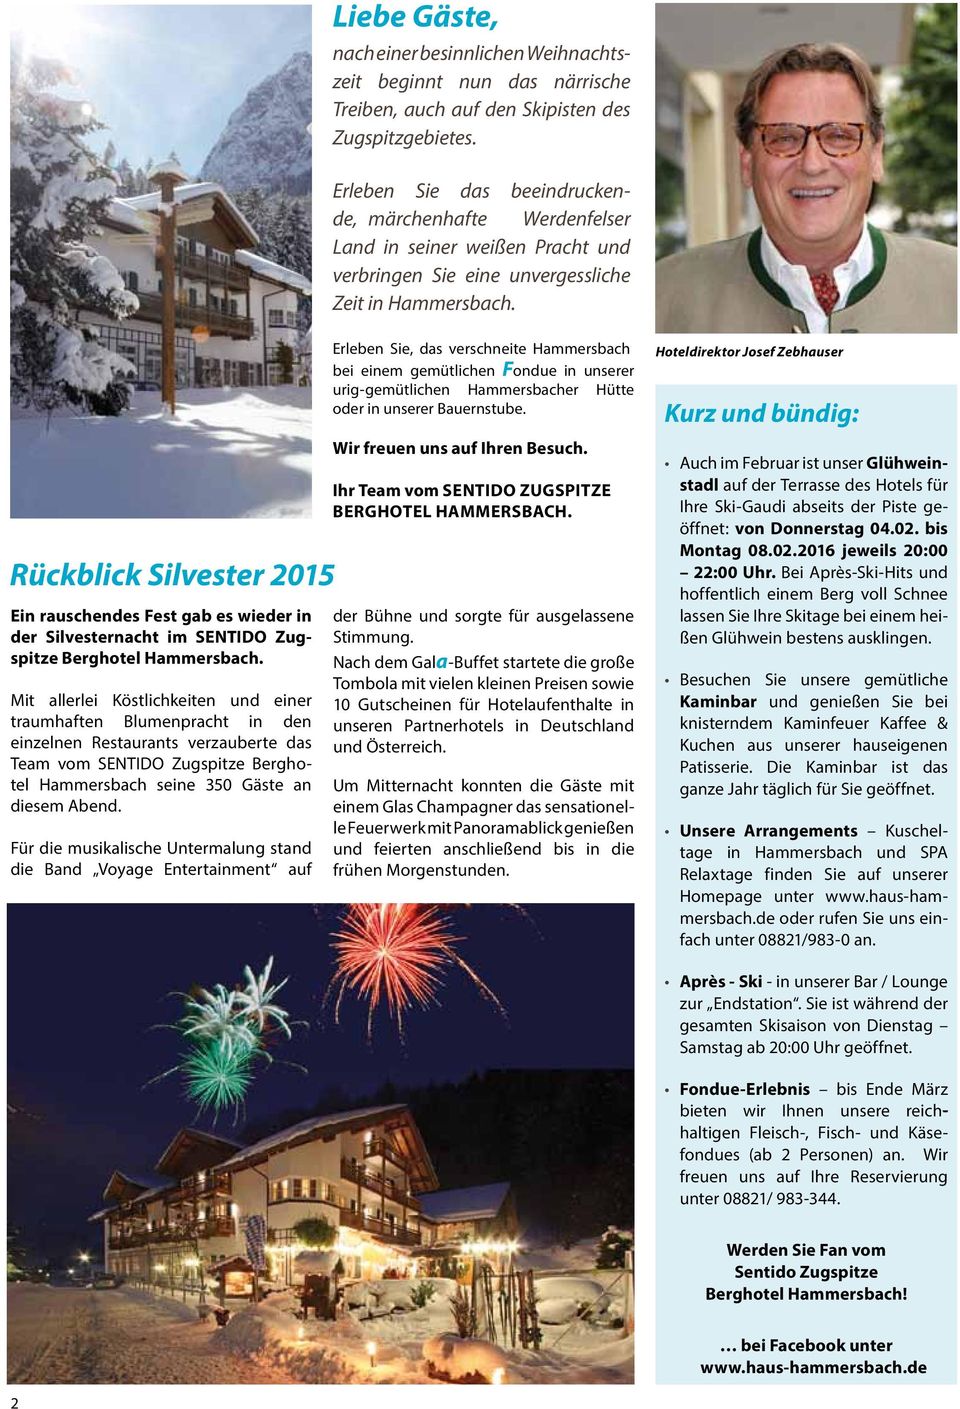 Rückblick Silvester 2015 Ein rauschendes Fest gab es wieder in der Silvesternacht im SENTIDO Zugspitze Berghotel Hammersbach.